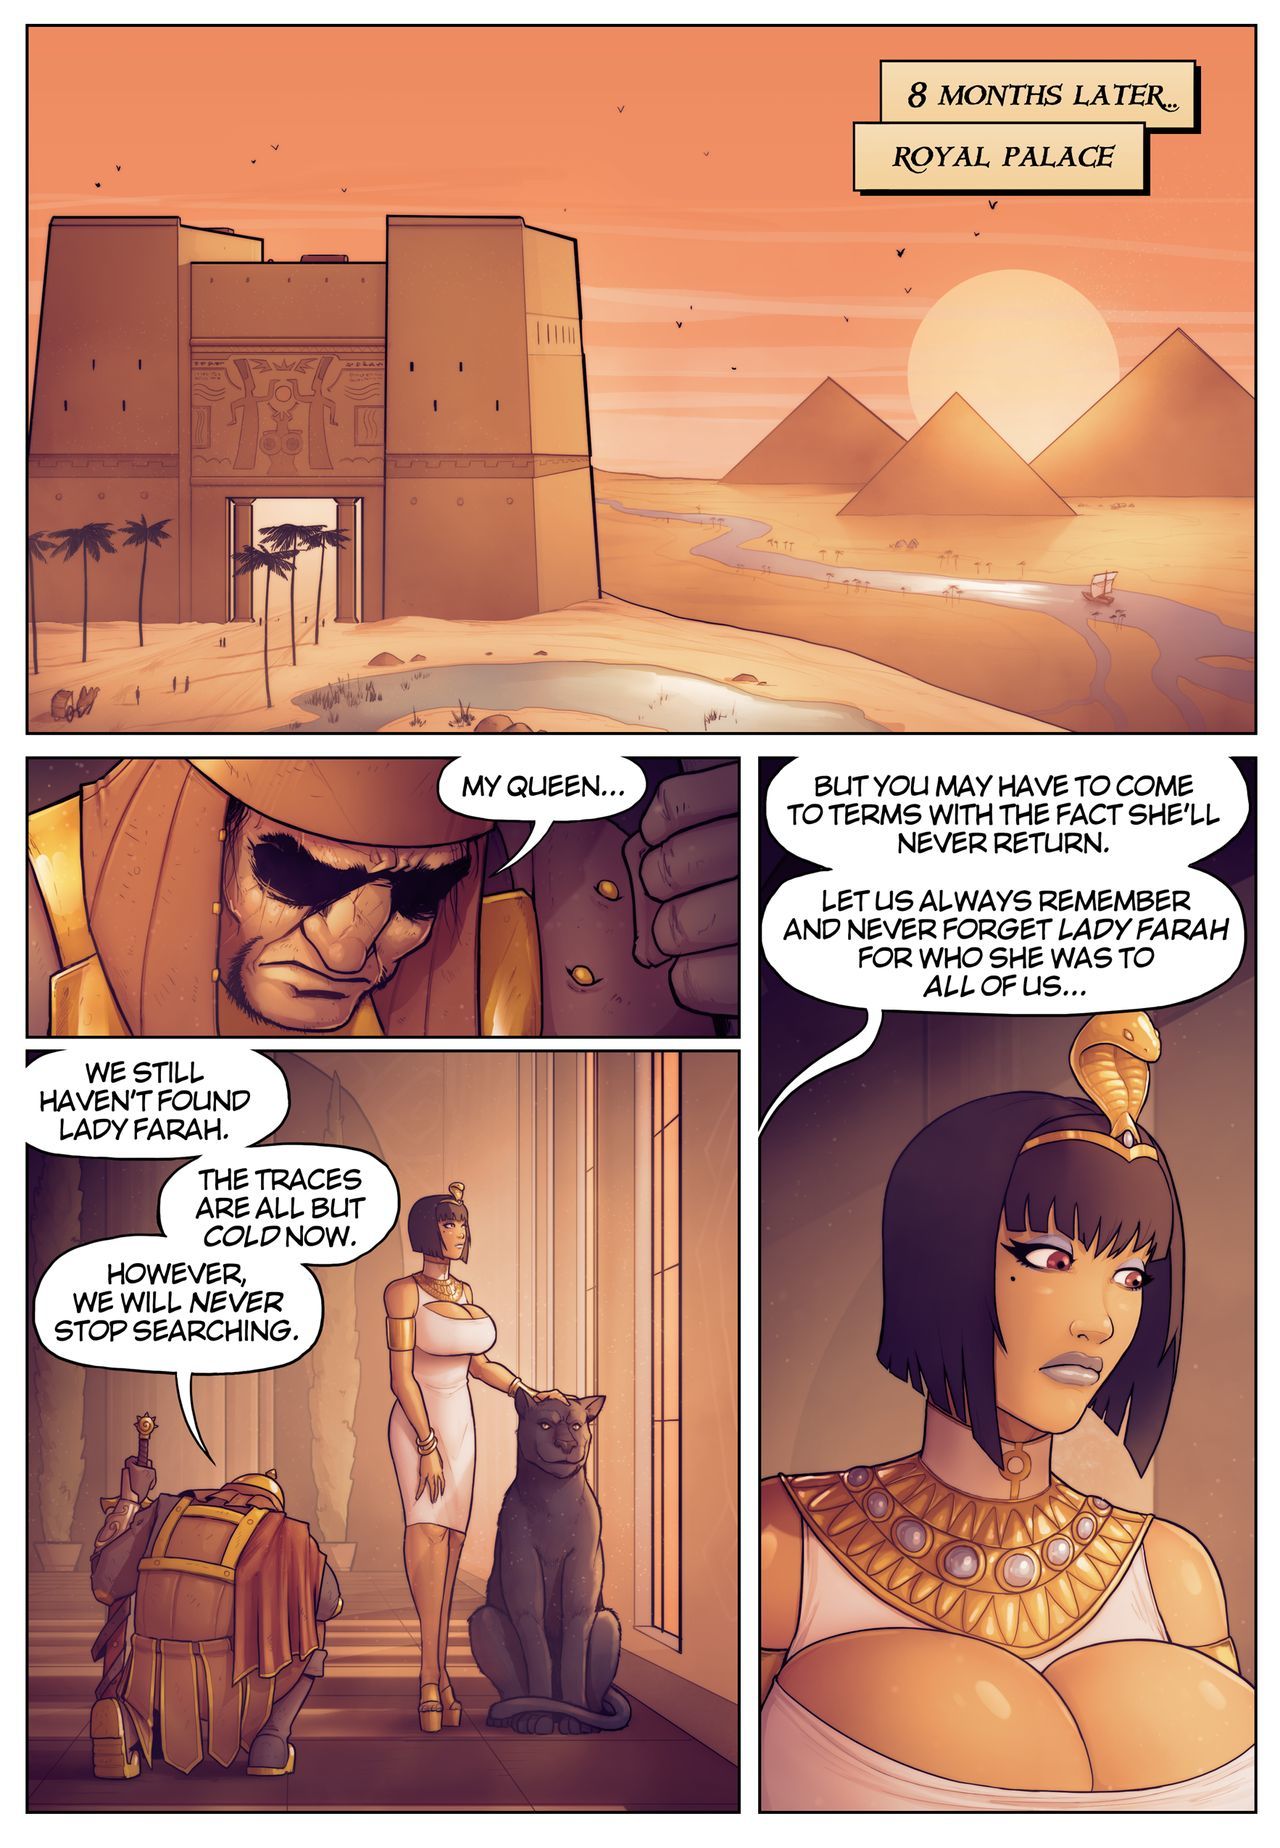 la leggenda di Regina opala racconti di pharah: in il ombra di anubis*